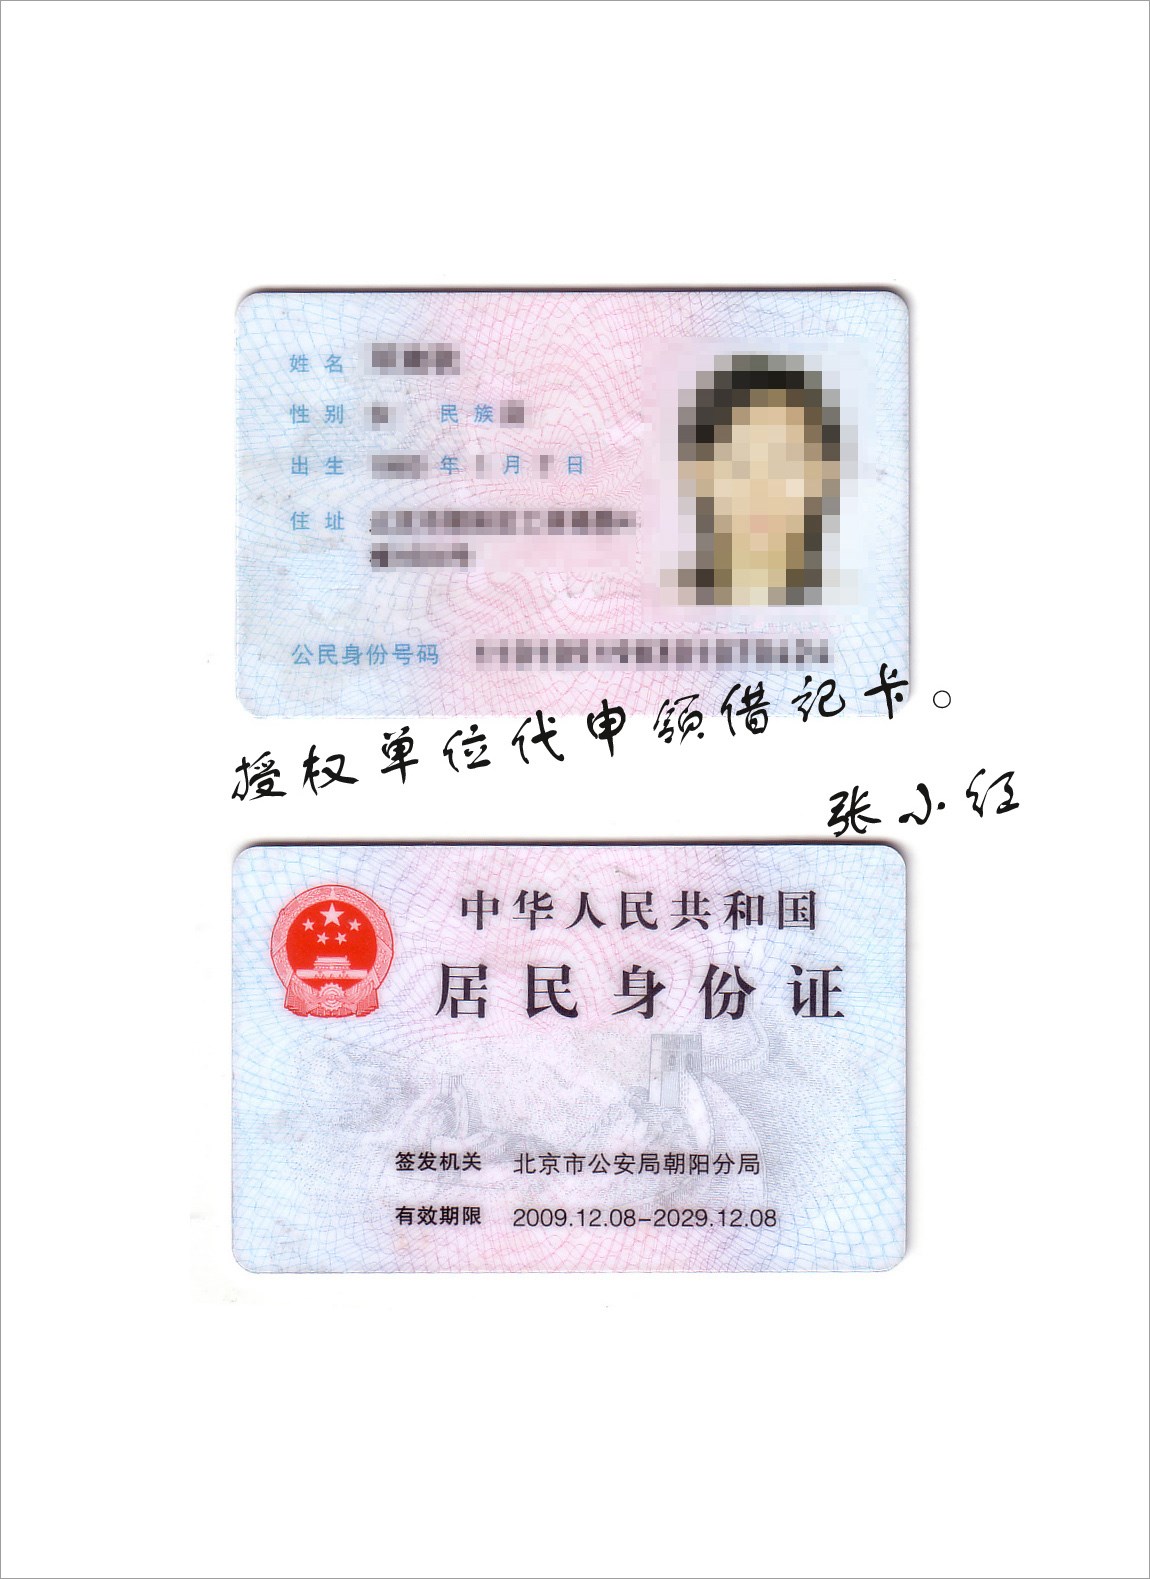 身份证照片转换成复印件 身份证照片，用Excel秒变复印件 | 说明书网